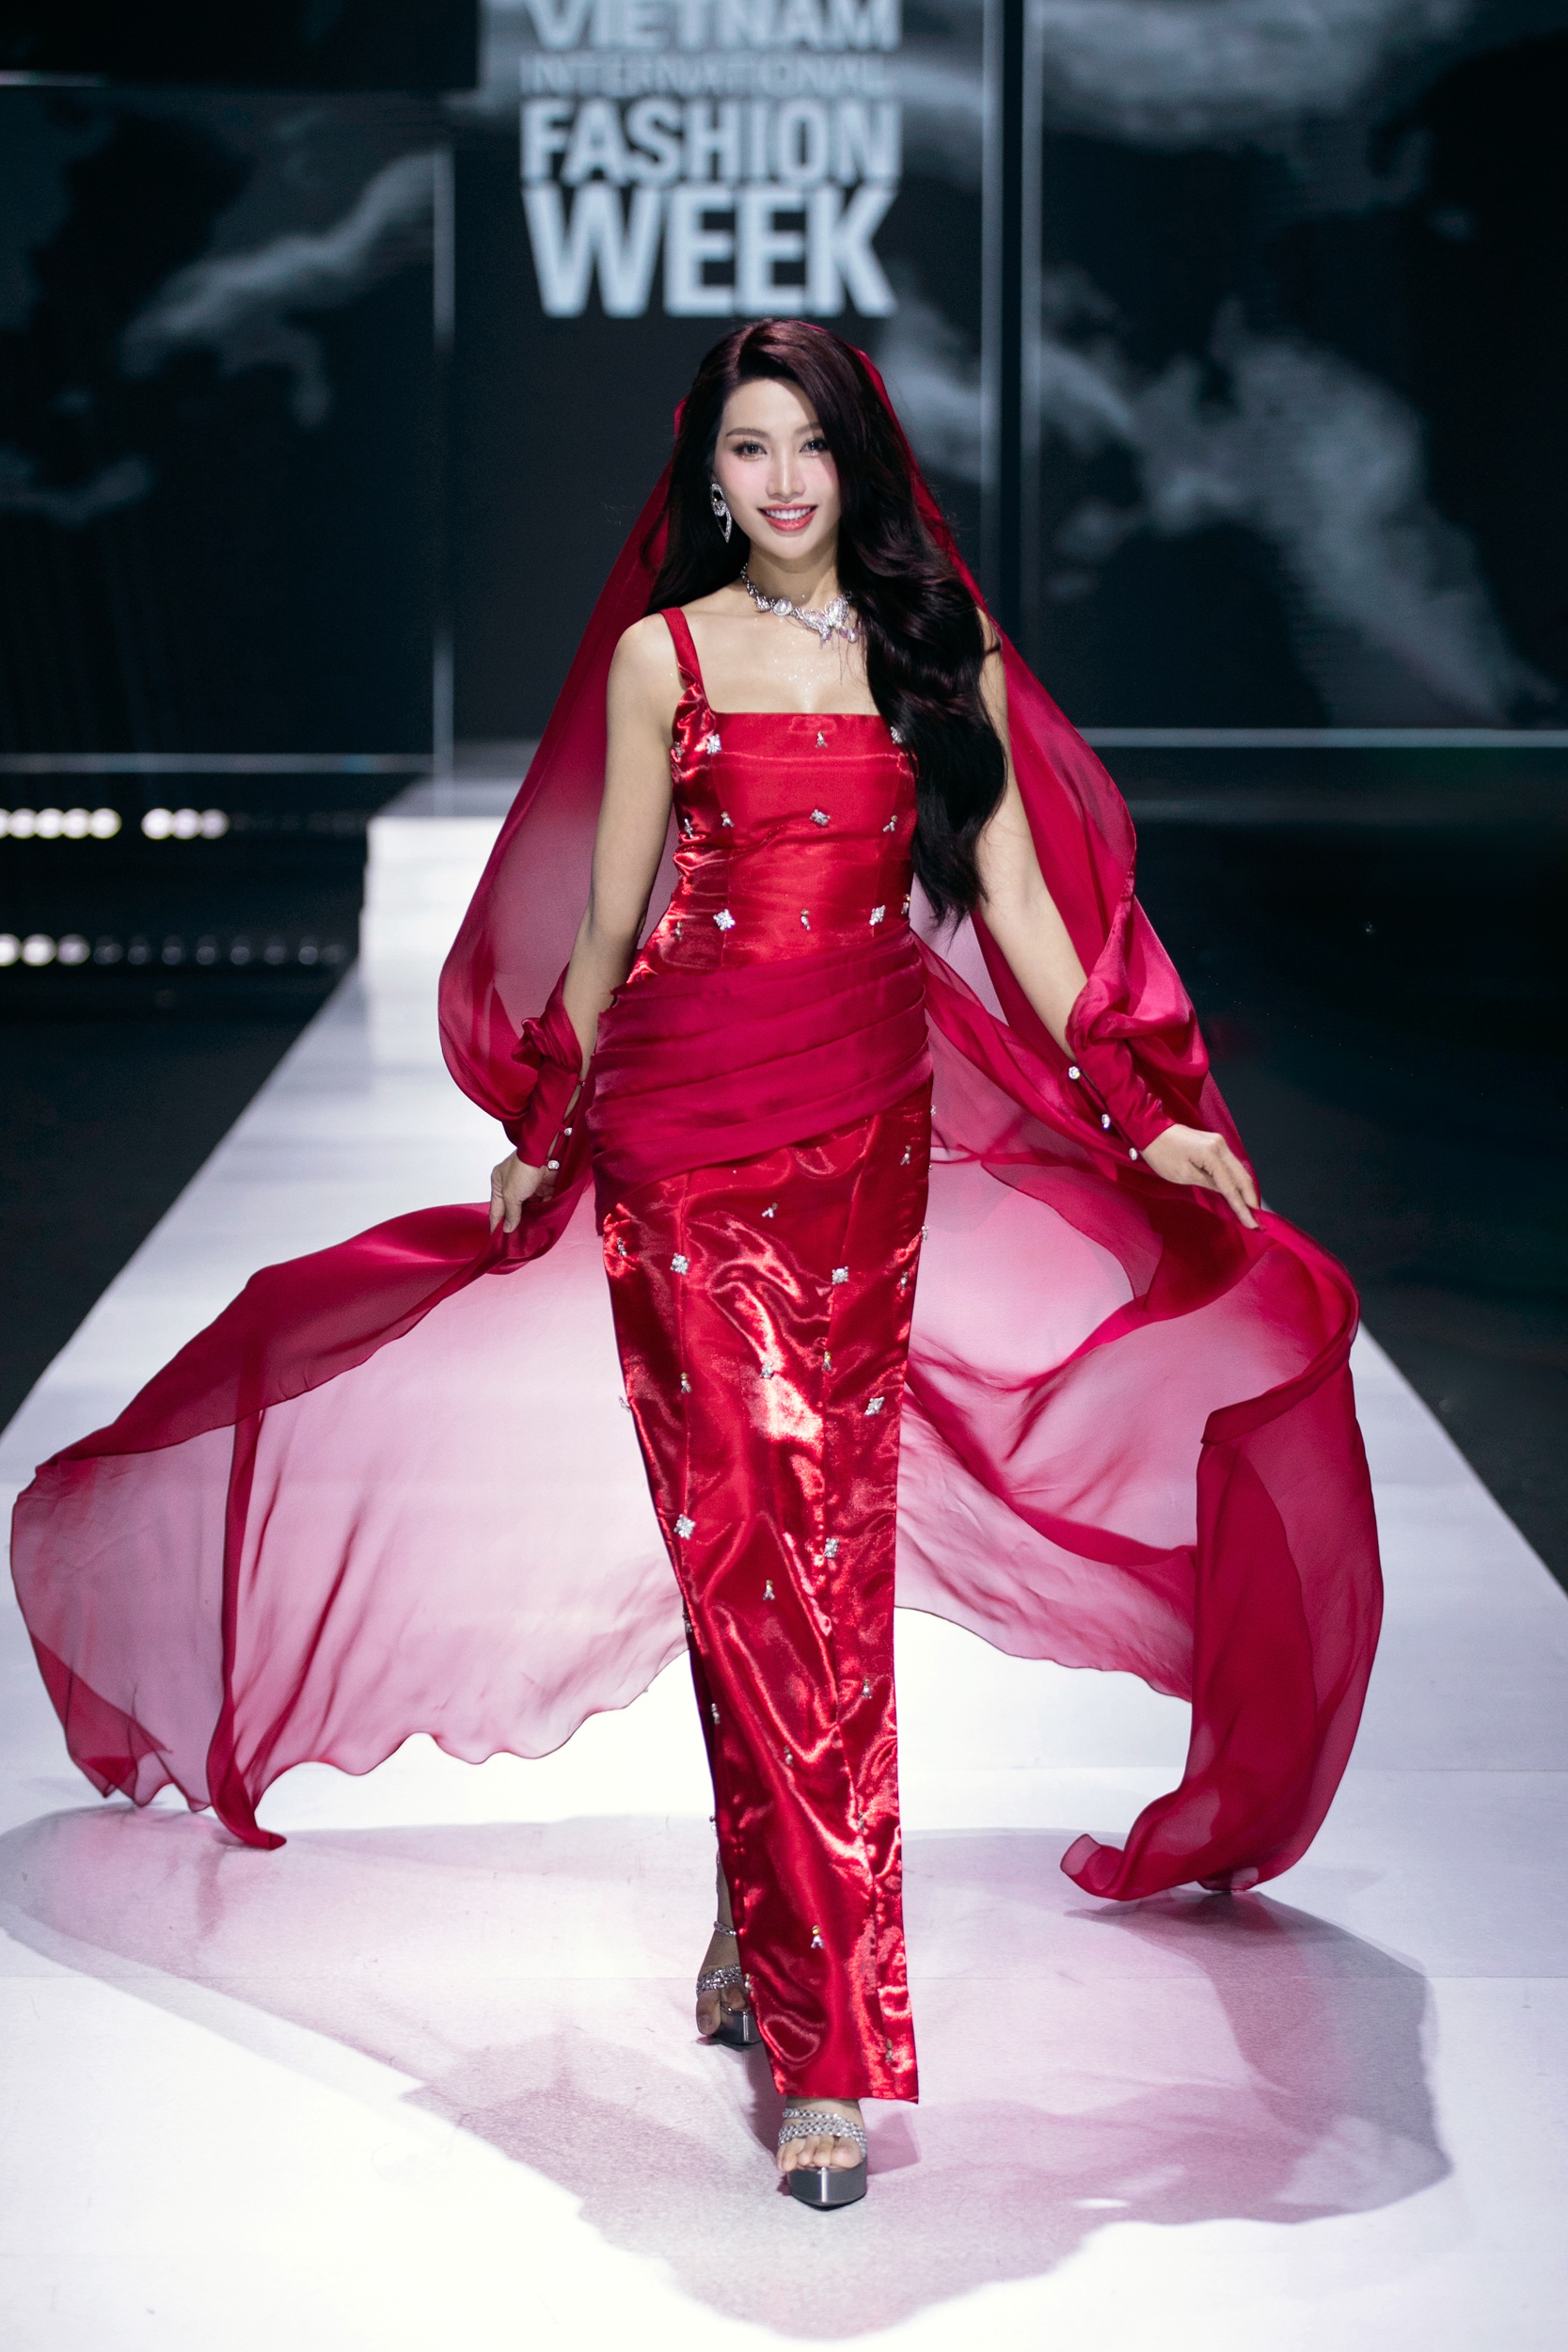 Giữ vị trí mở màn là Á hậu Chế Nguyễn Quỳnh Châu. Á hậu 1 của Miss Grand Vietnam 2022 gắn bó với NTK trong nhiều mùa tuần lễ thời trang, thường xuyên đảm nhiệm những vị trí quan trọng trong show.